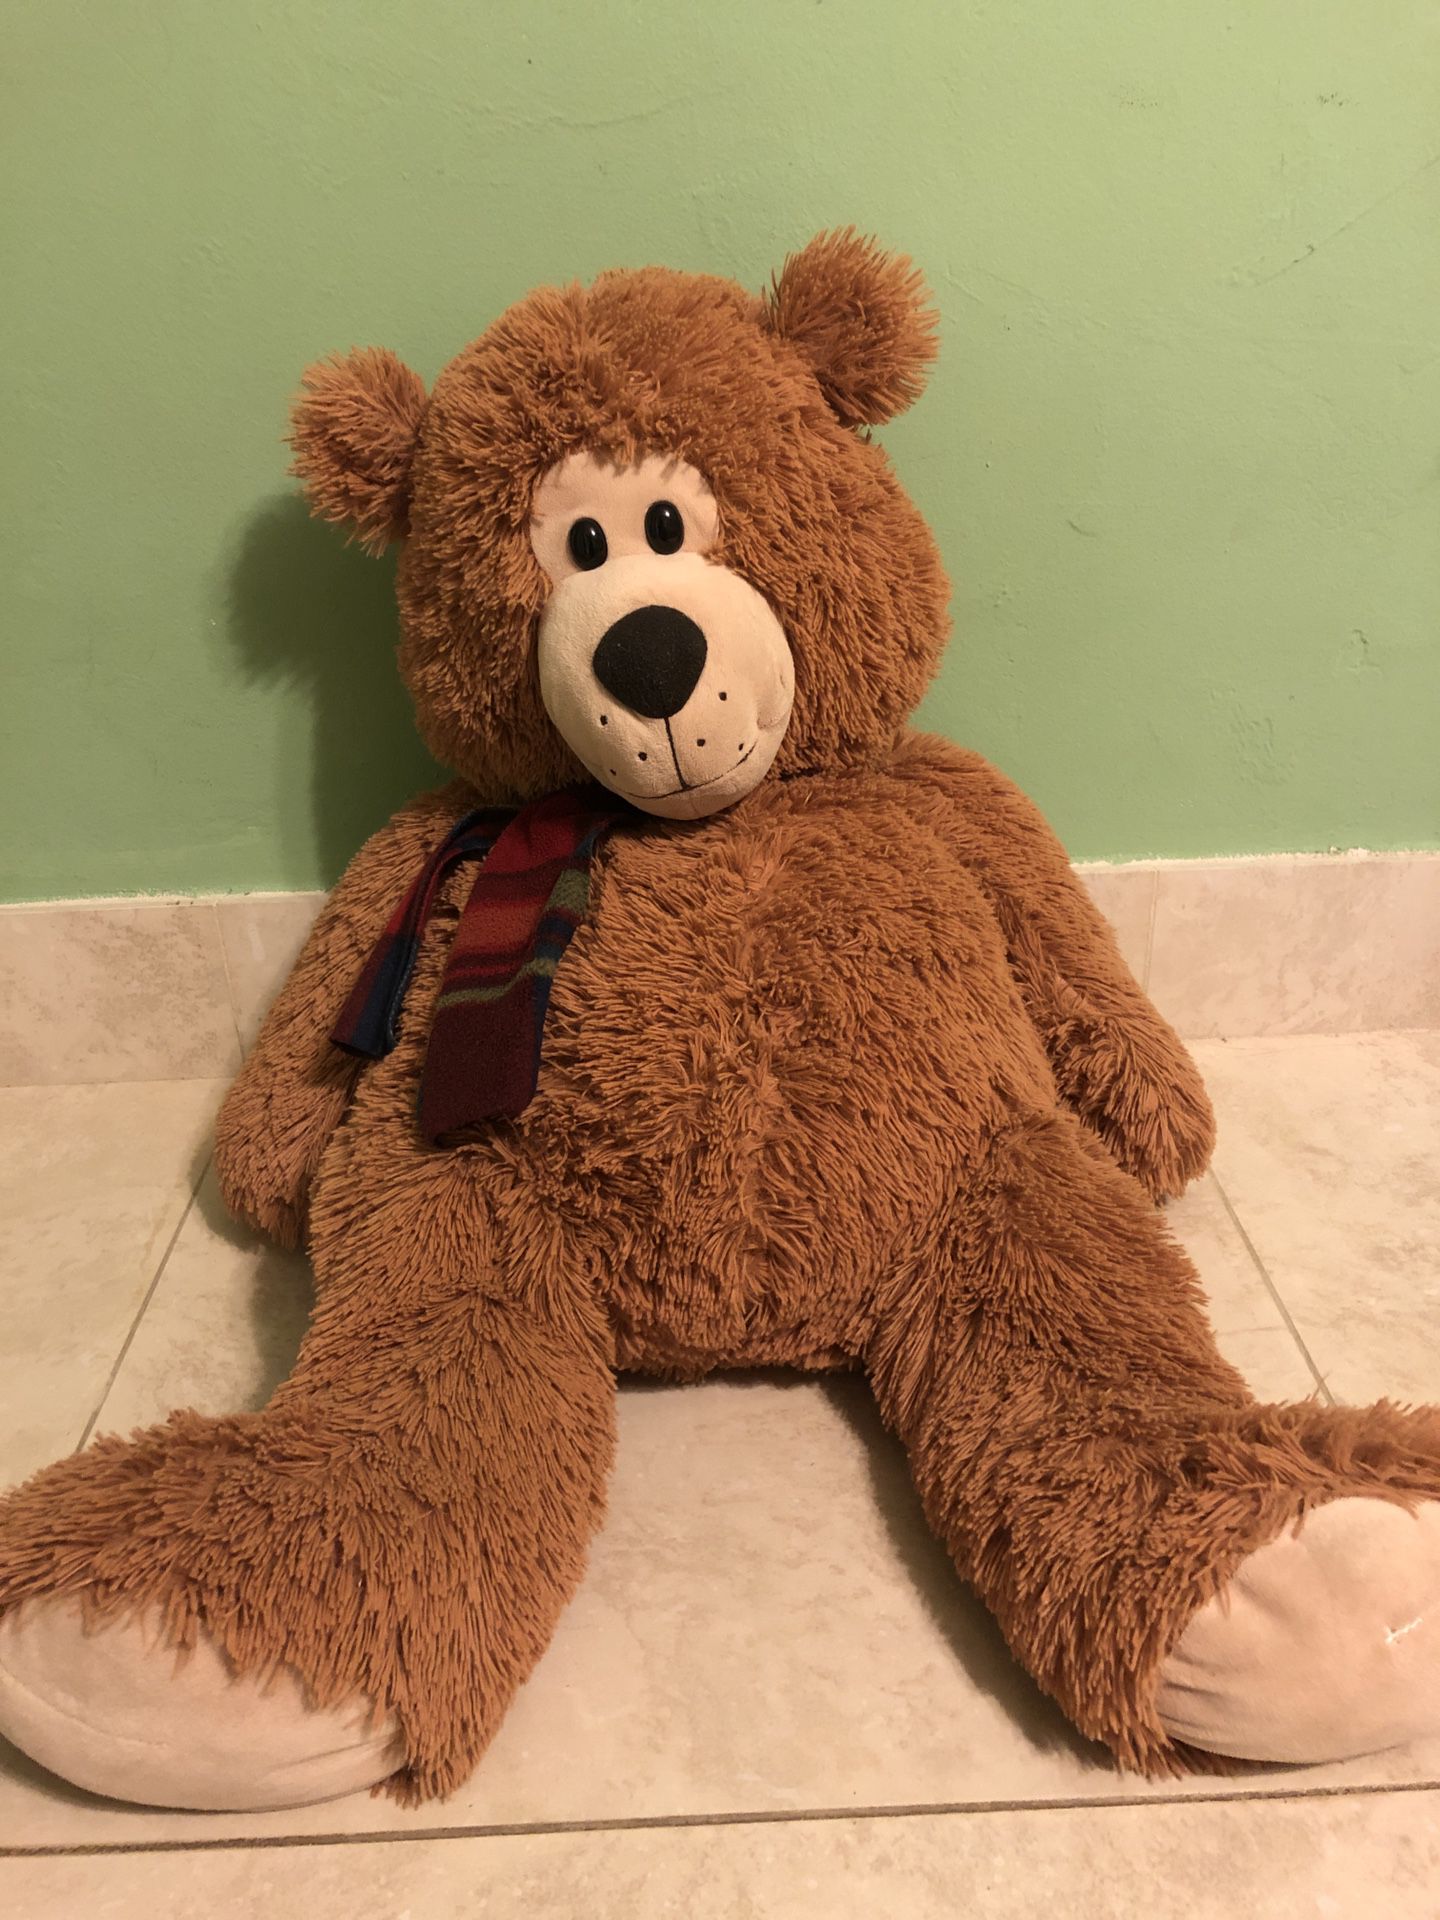 Big Stuffed Teddy Bear